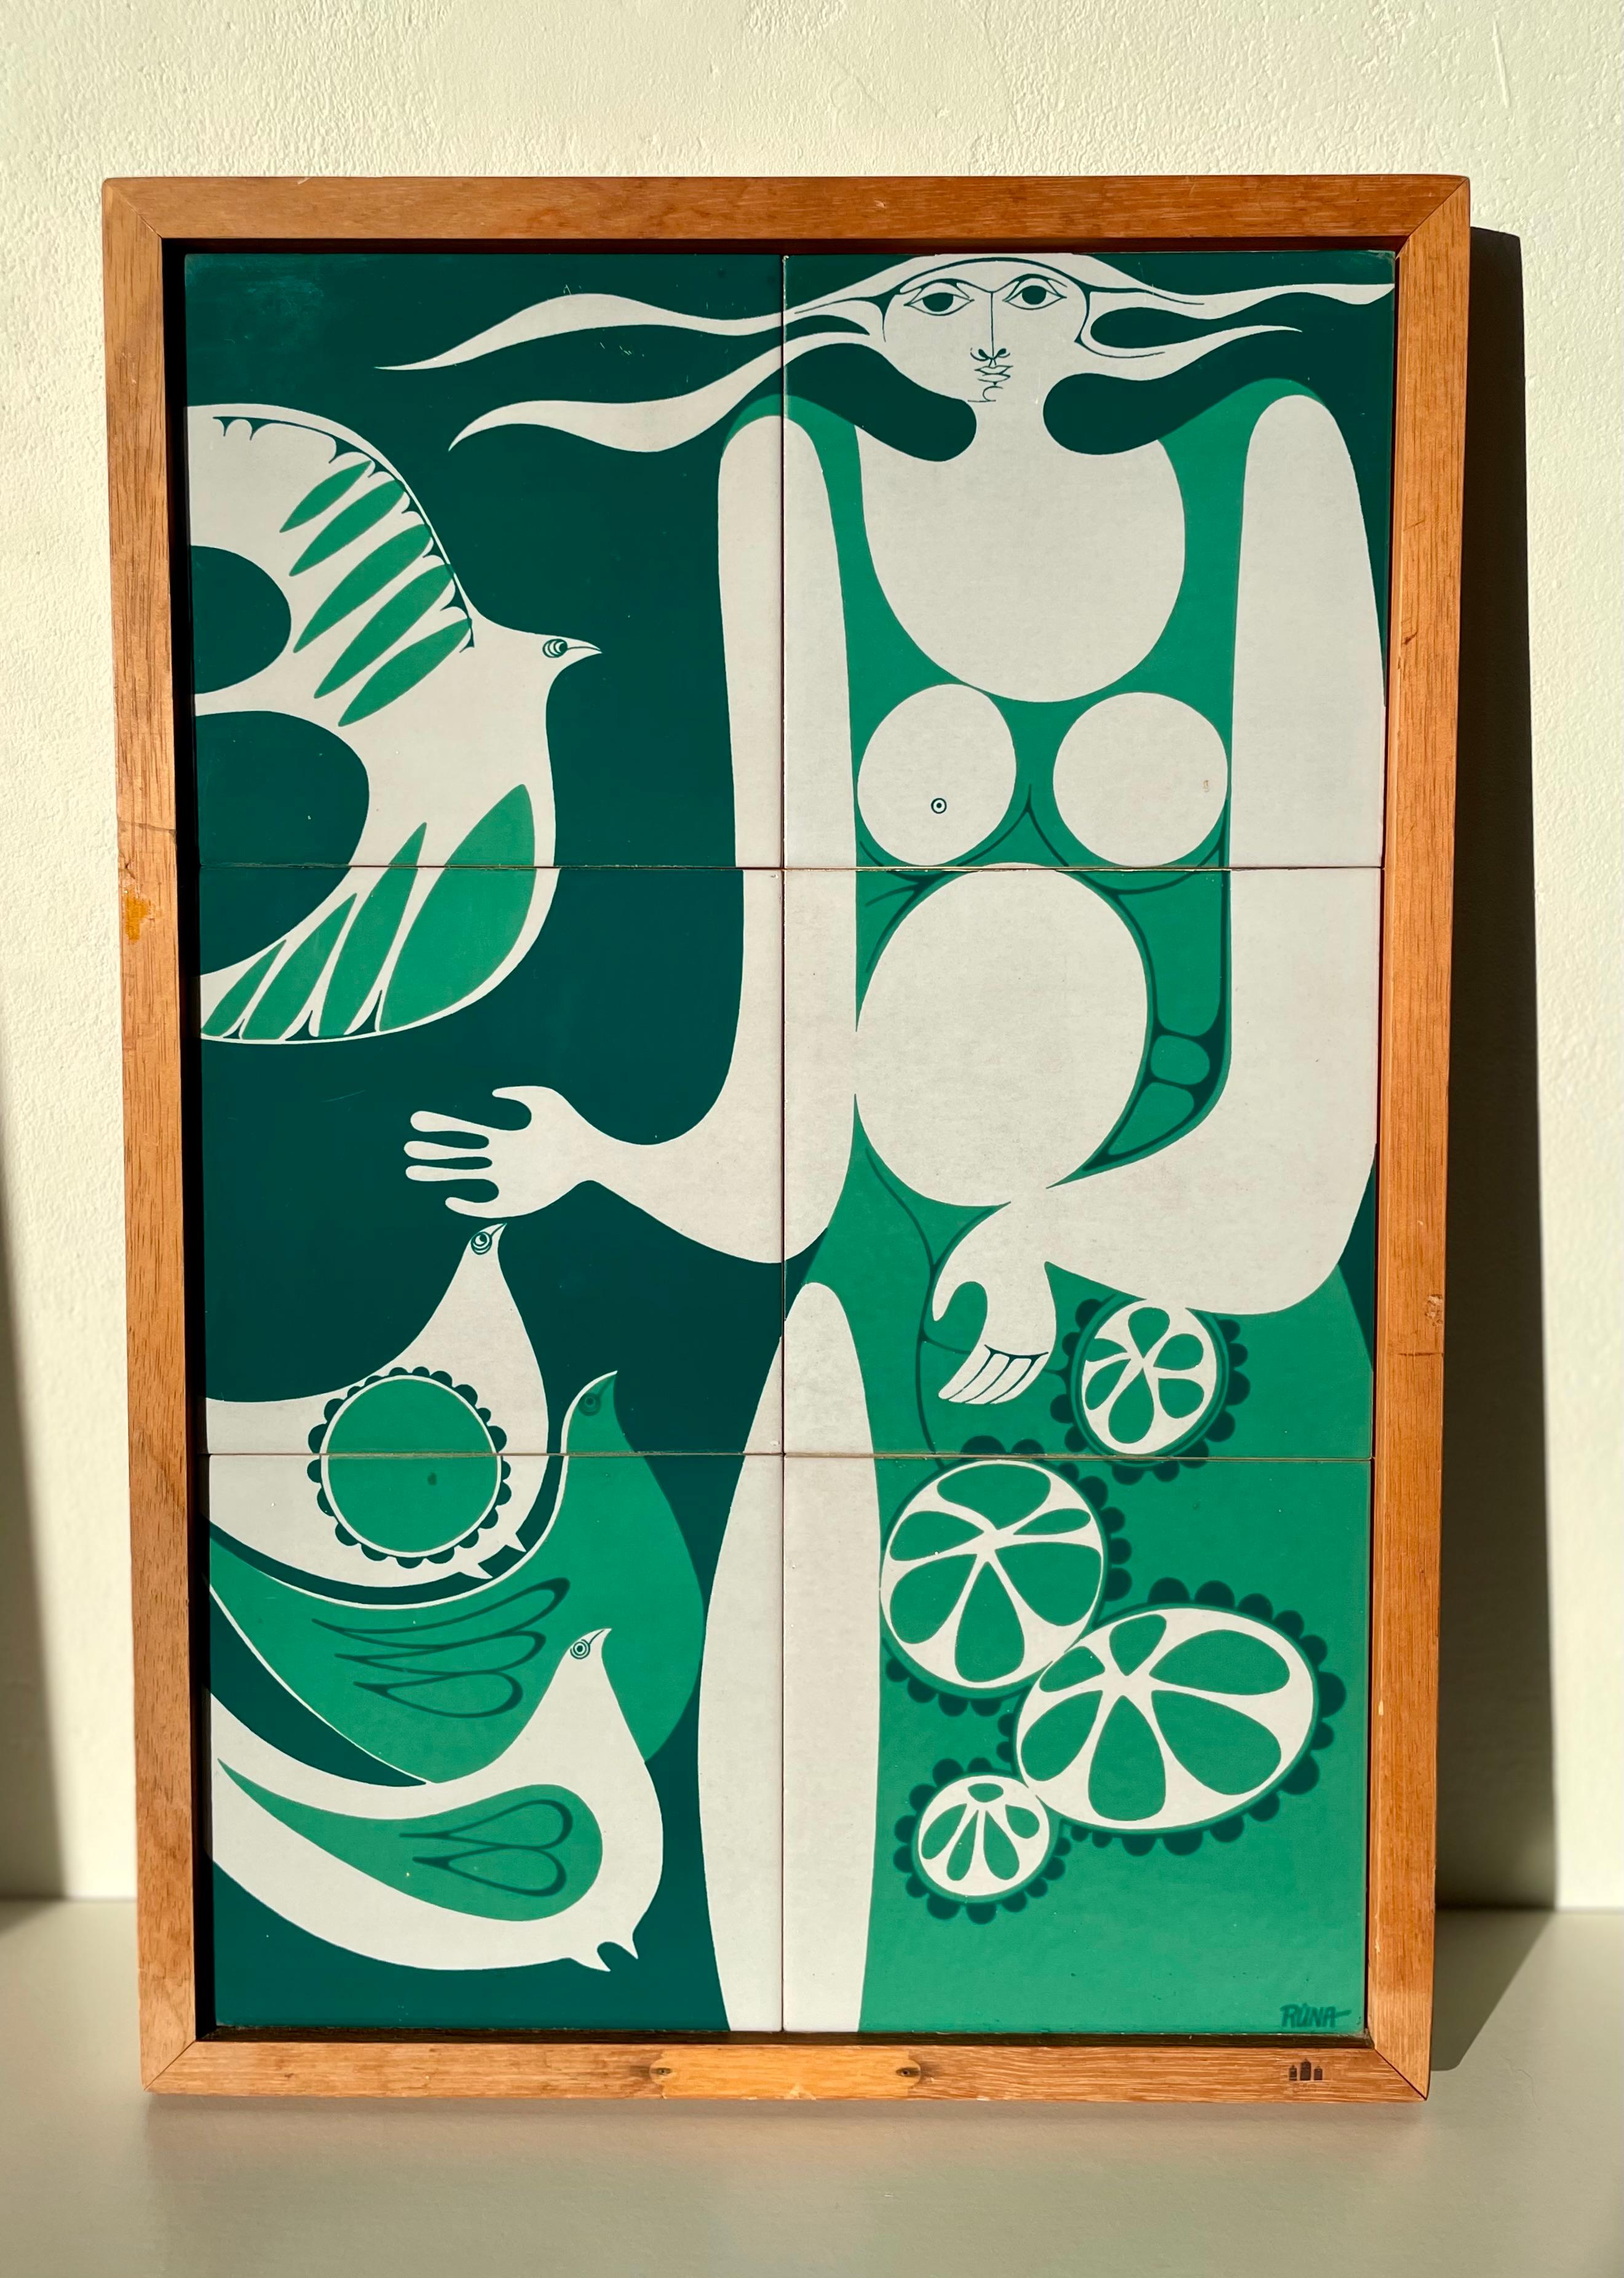 Exceptionnelle pièce danoise moderne du milieu du siècle en céramique. Plaque murale faite à la main composée de six carreaux émaillés (chacun de 15x15 cm) dans les couleurs blanc, pin foncé et vert forêt, tous peints à la main avec des formes